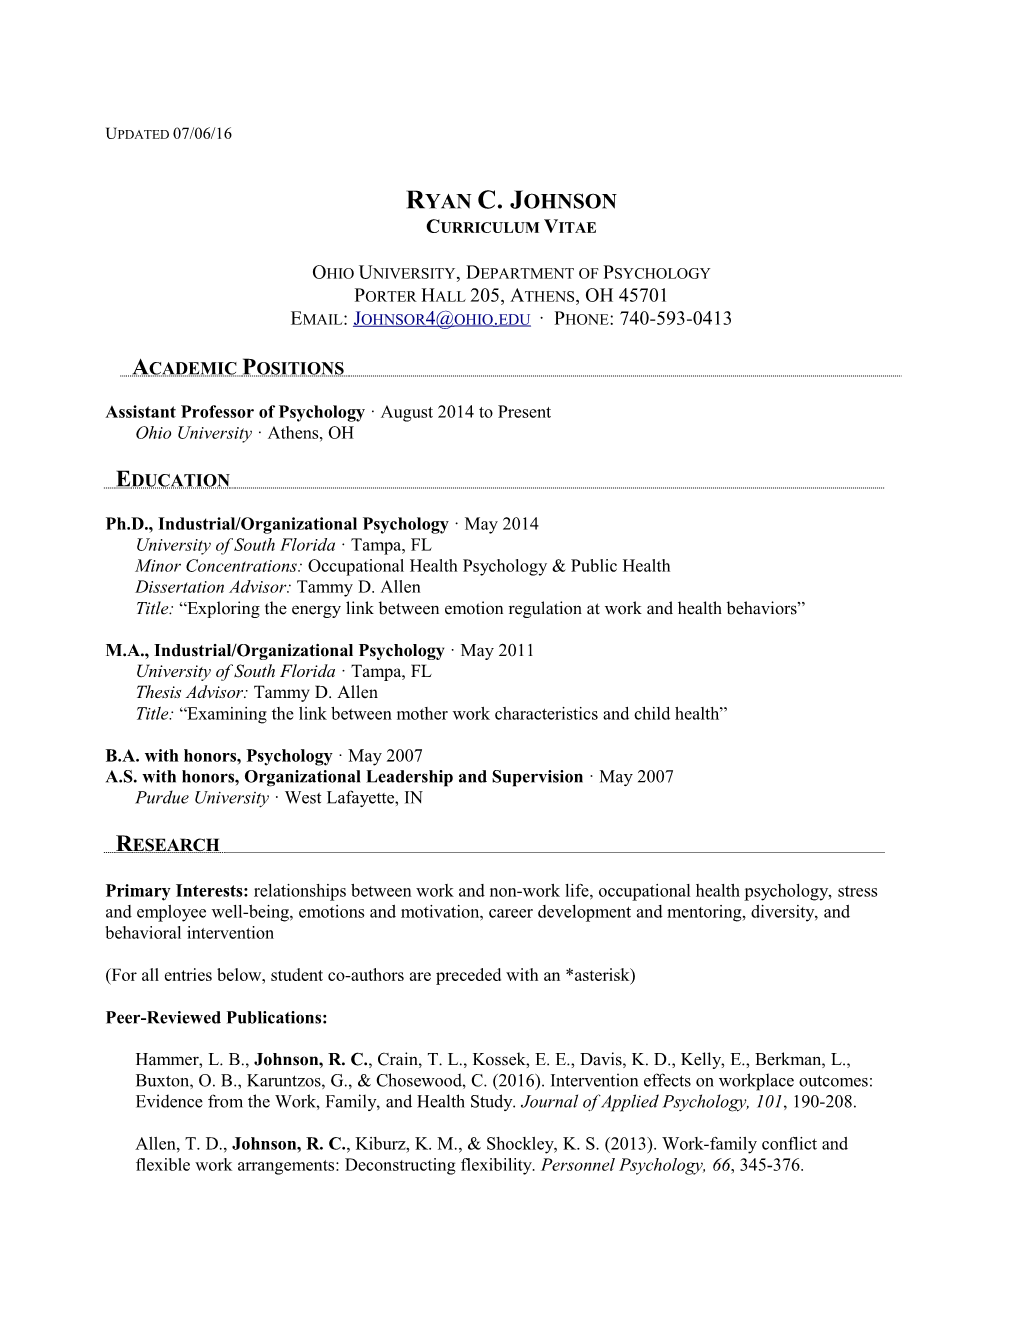 CV for Dr. Ryan Johnson